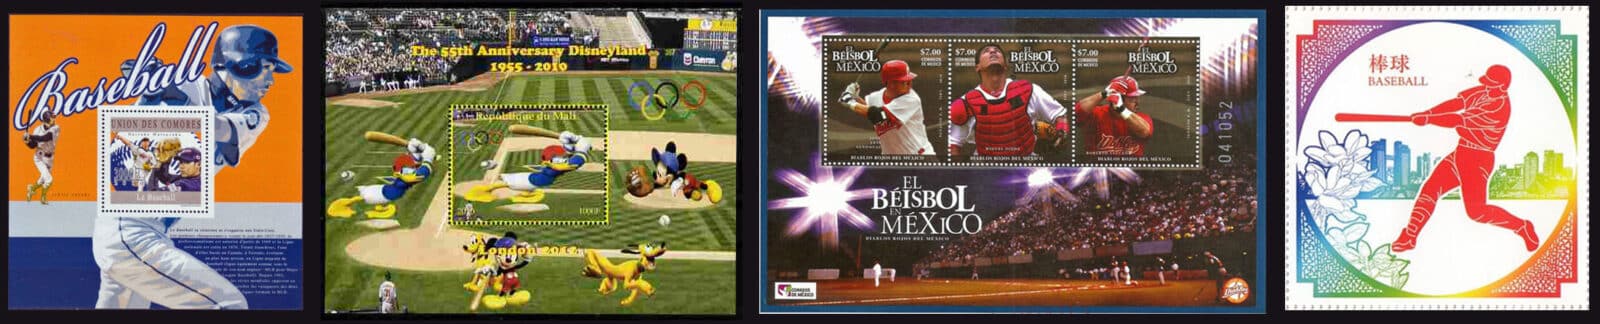 2010 Baseball Postage Stamps header